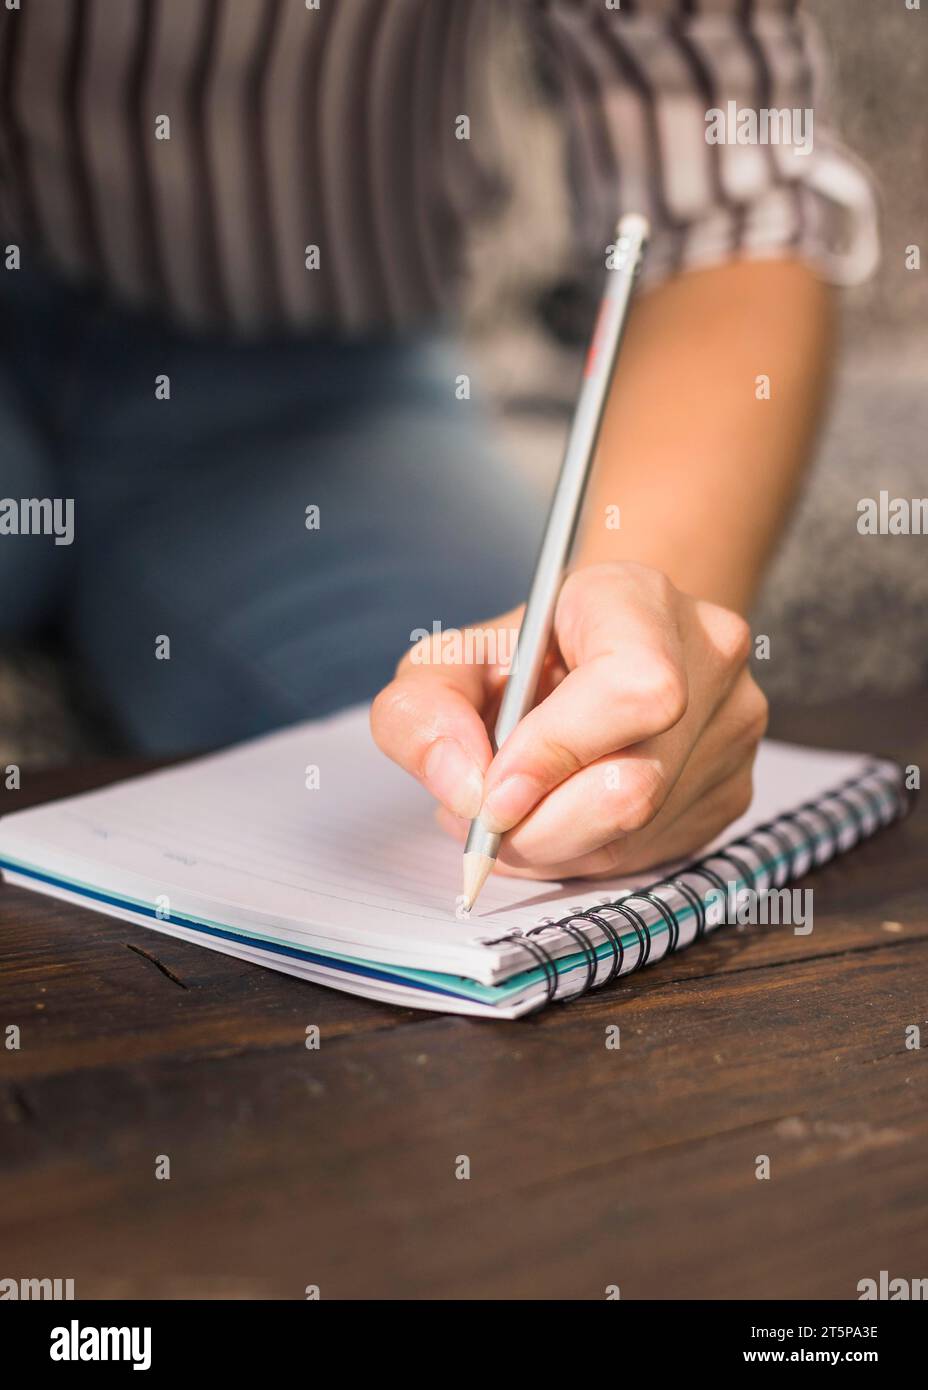 Donna che scrive con taccuino a spirale a matita tavolo in legno Foto Stock